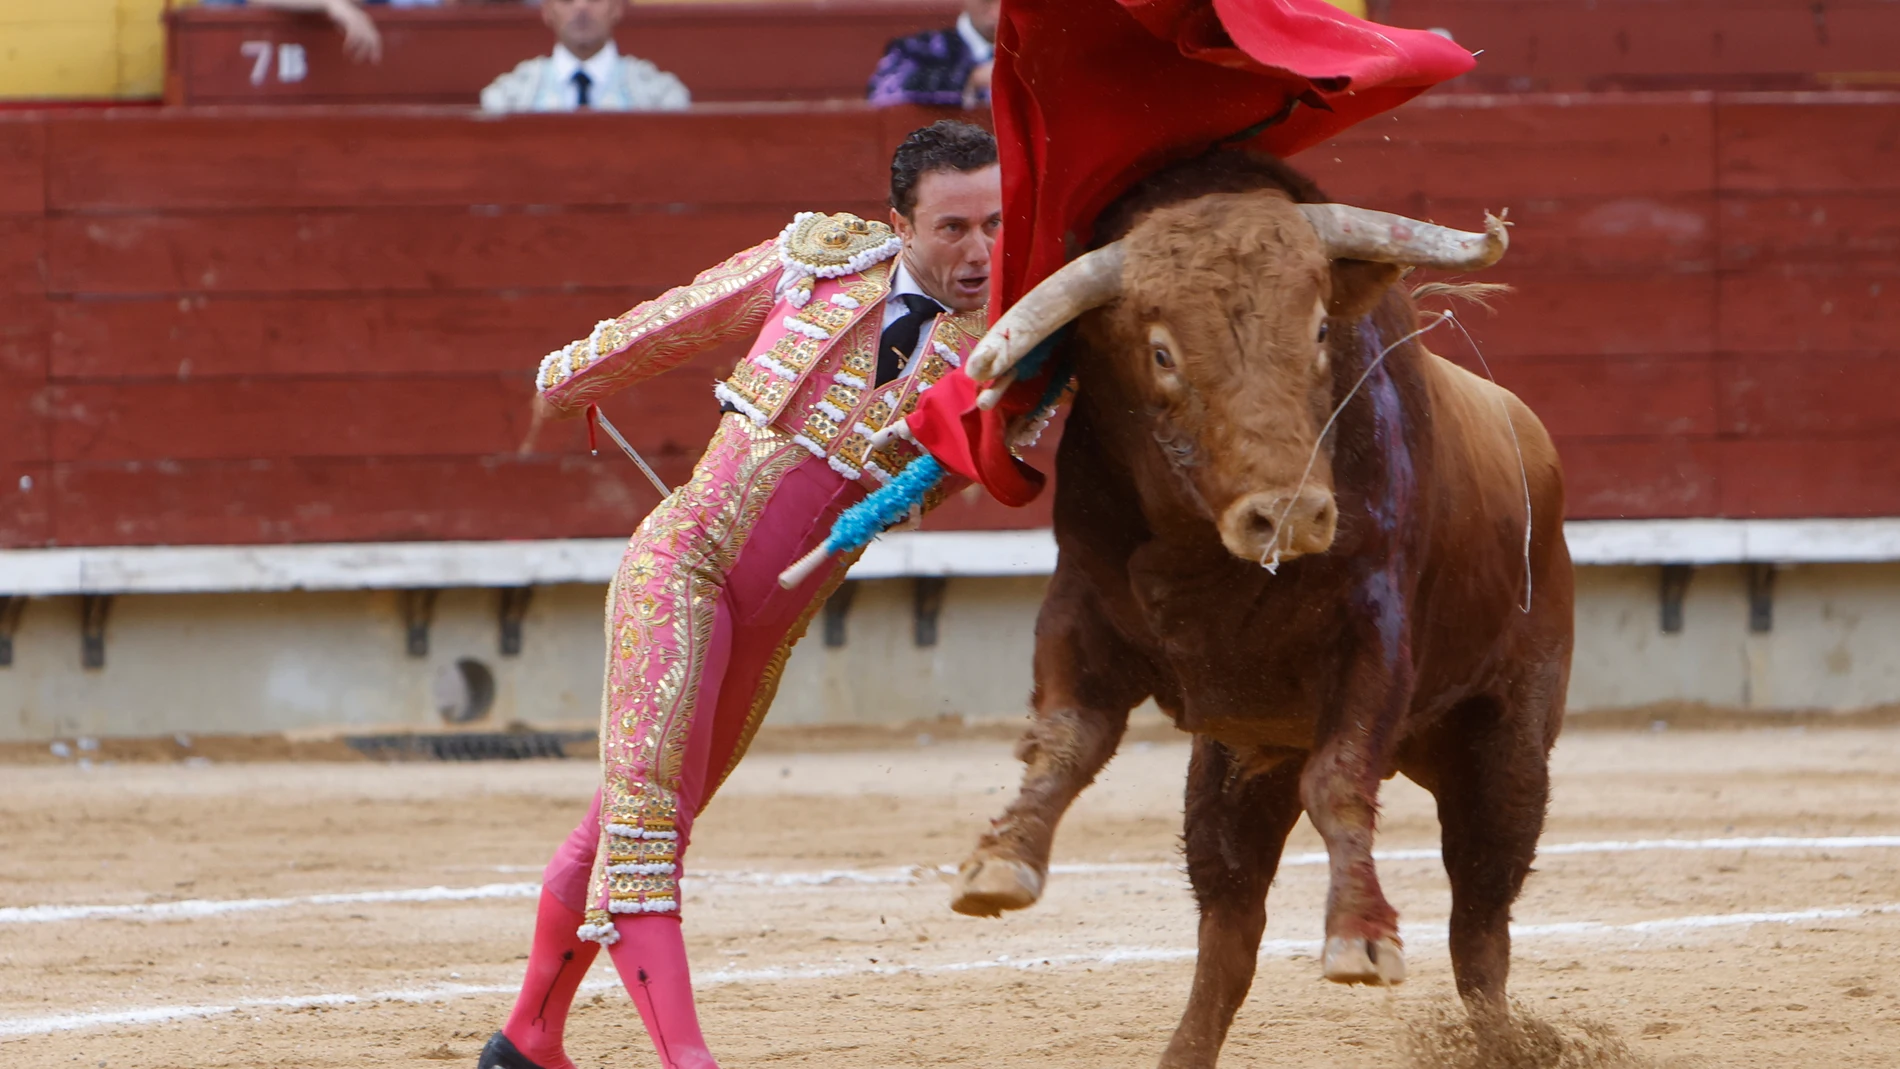 CASTELLÓN, 26/06/2022.- El diestro Rafaelillo con su primer toro hoy domingo en el festejo taurino de la Feria de Sant Joan i Sant Pere de Castellón, con toros de Miura y El Pilar. EFE/Domenech Castelló